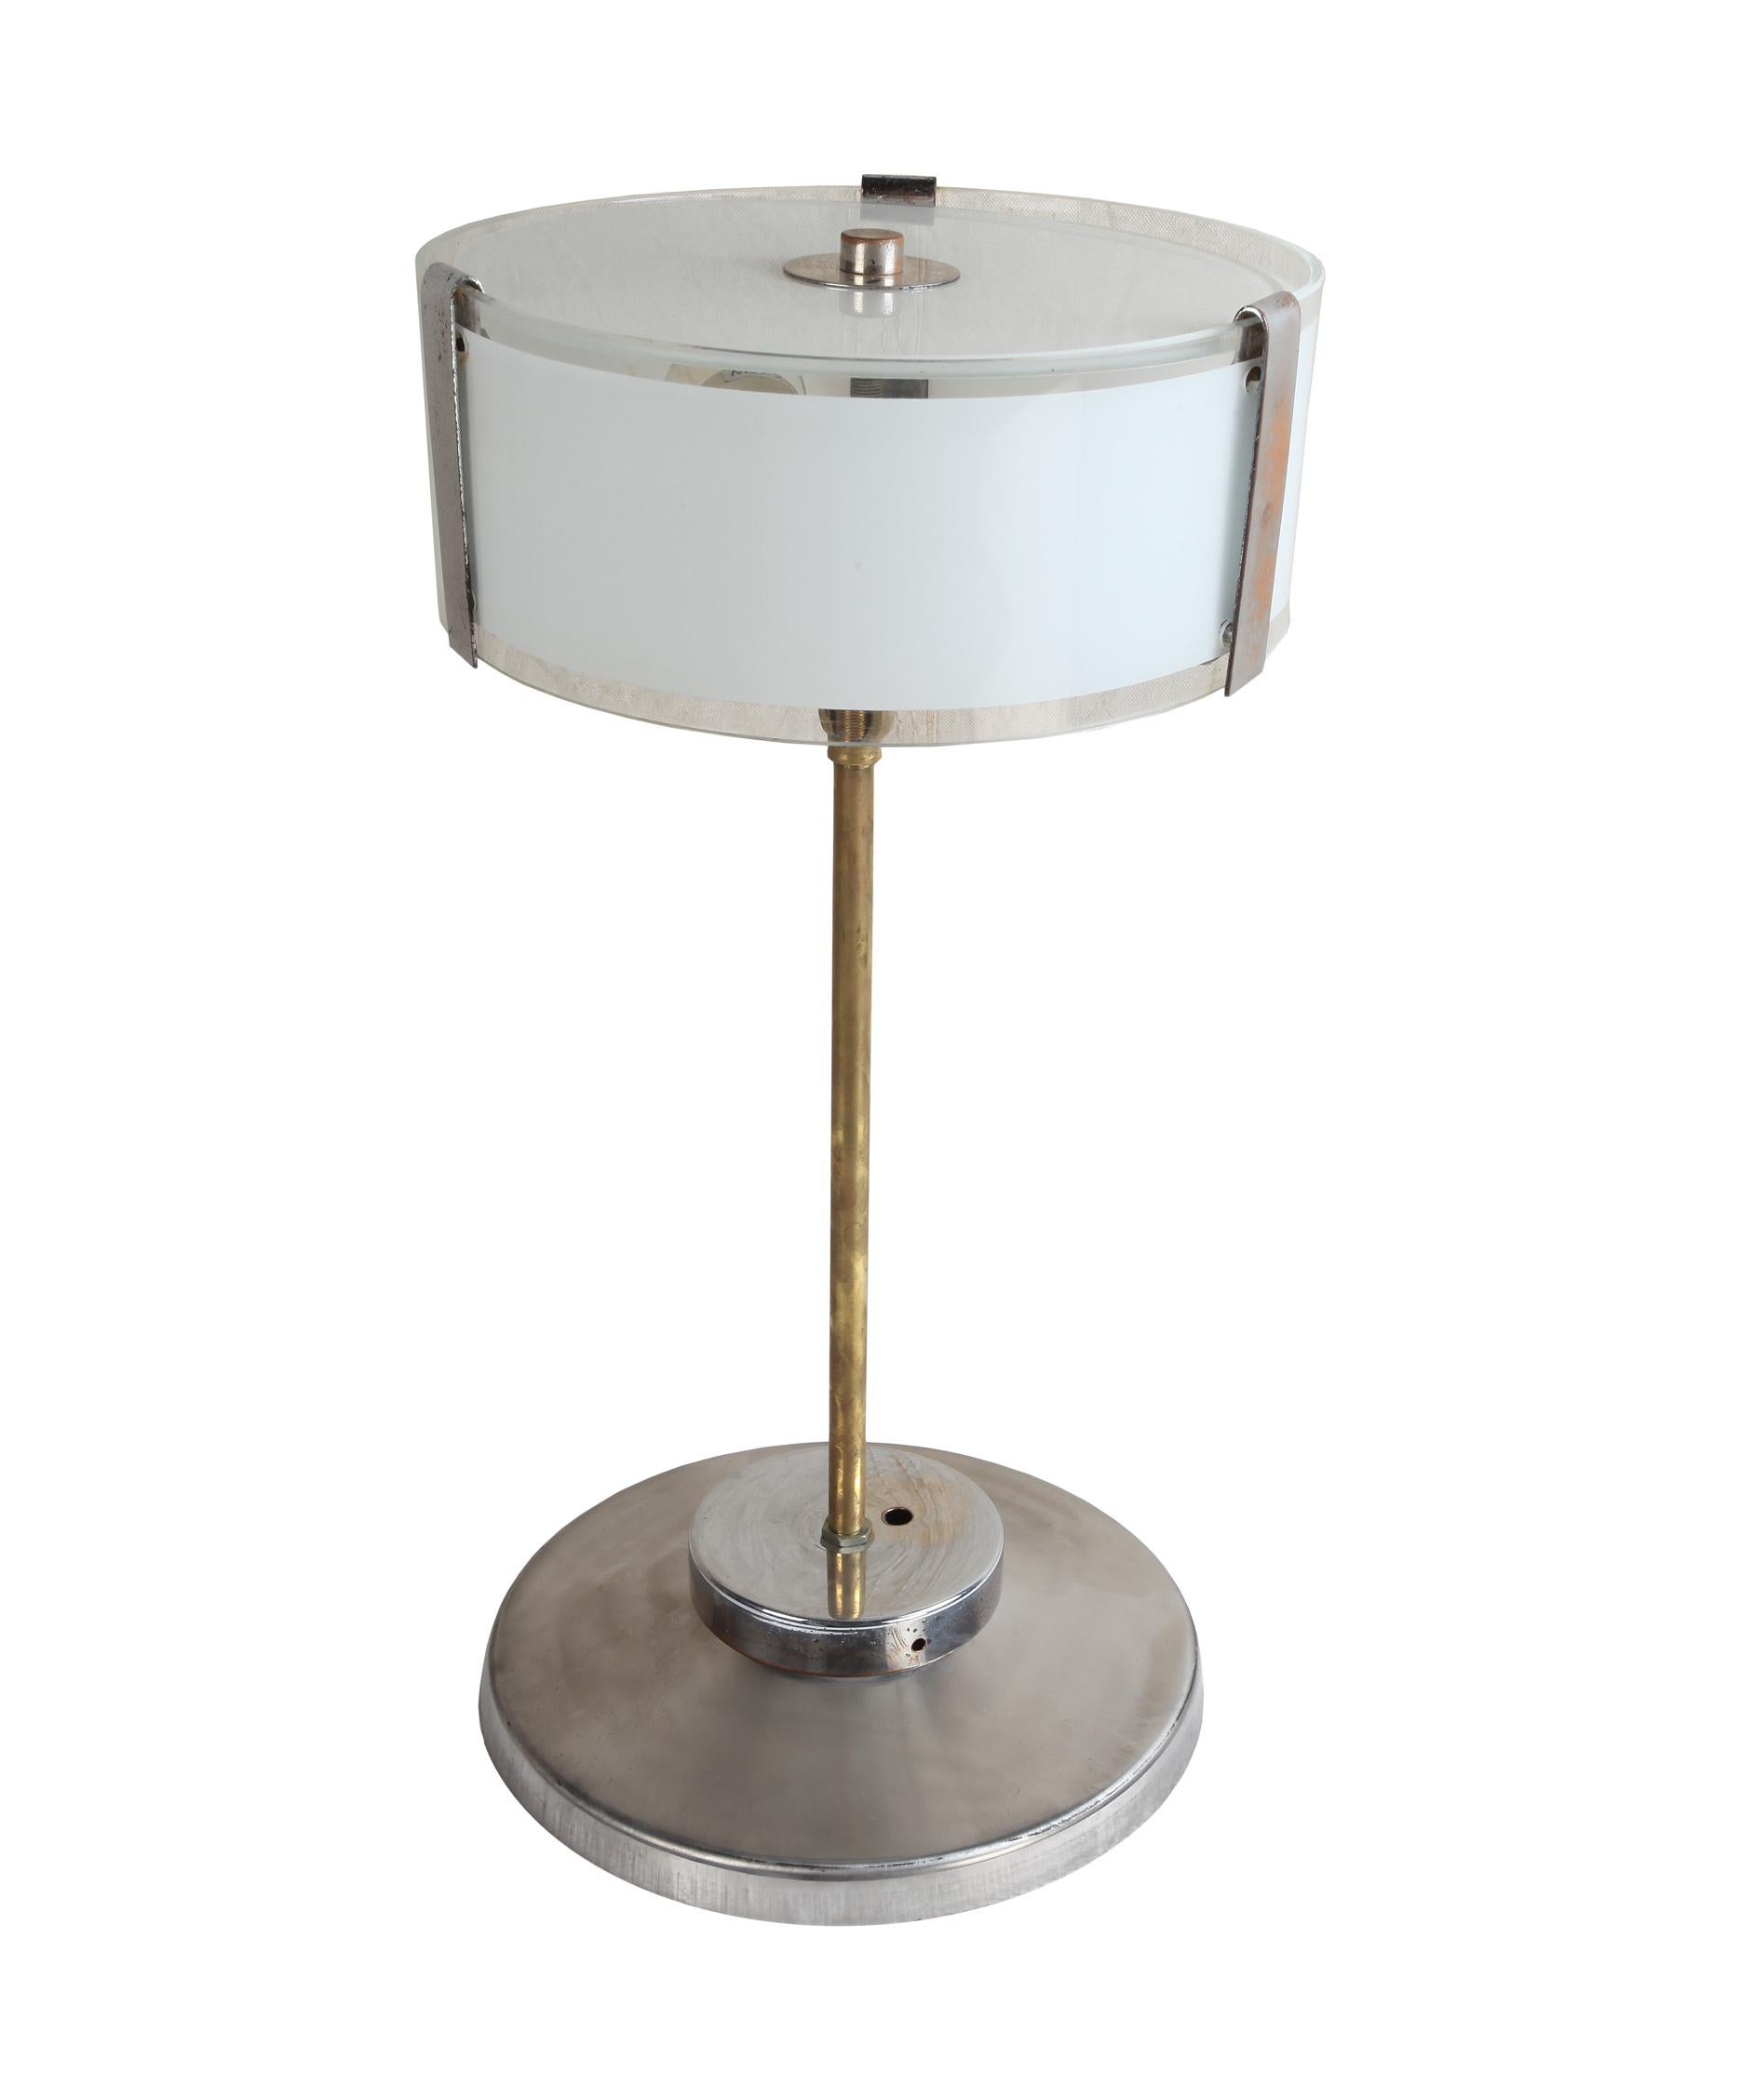 Paire de lampes de table chromées de style Mid-Century Modern avec abat-jour en verre dépoli. Tige en laiton. Chaque lampe est équipée de deux douilles de taille standard et est recâblée pour une utilisation américaine. Européen. Ils peuvent être